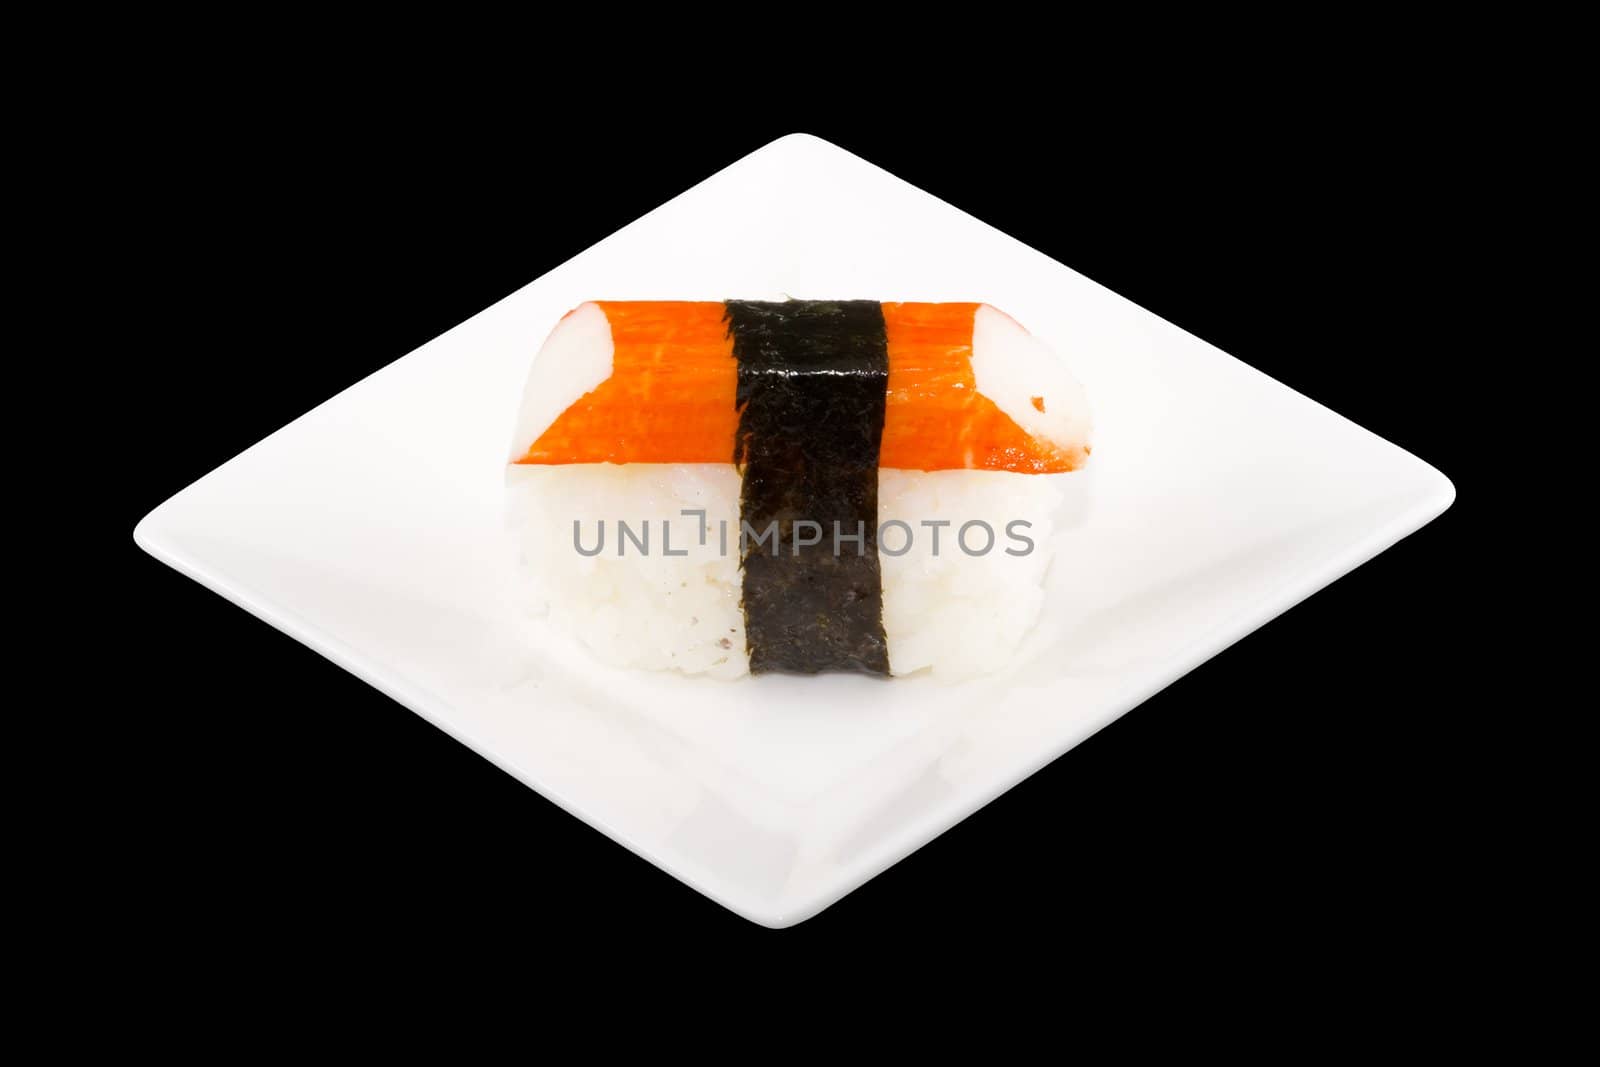 Sushi by werg